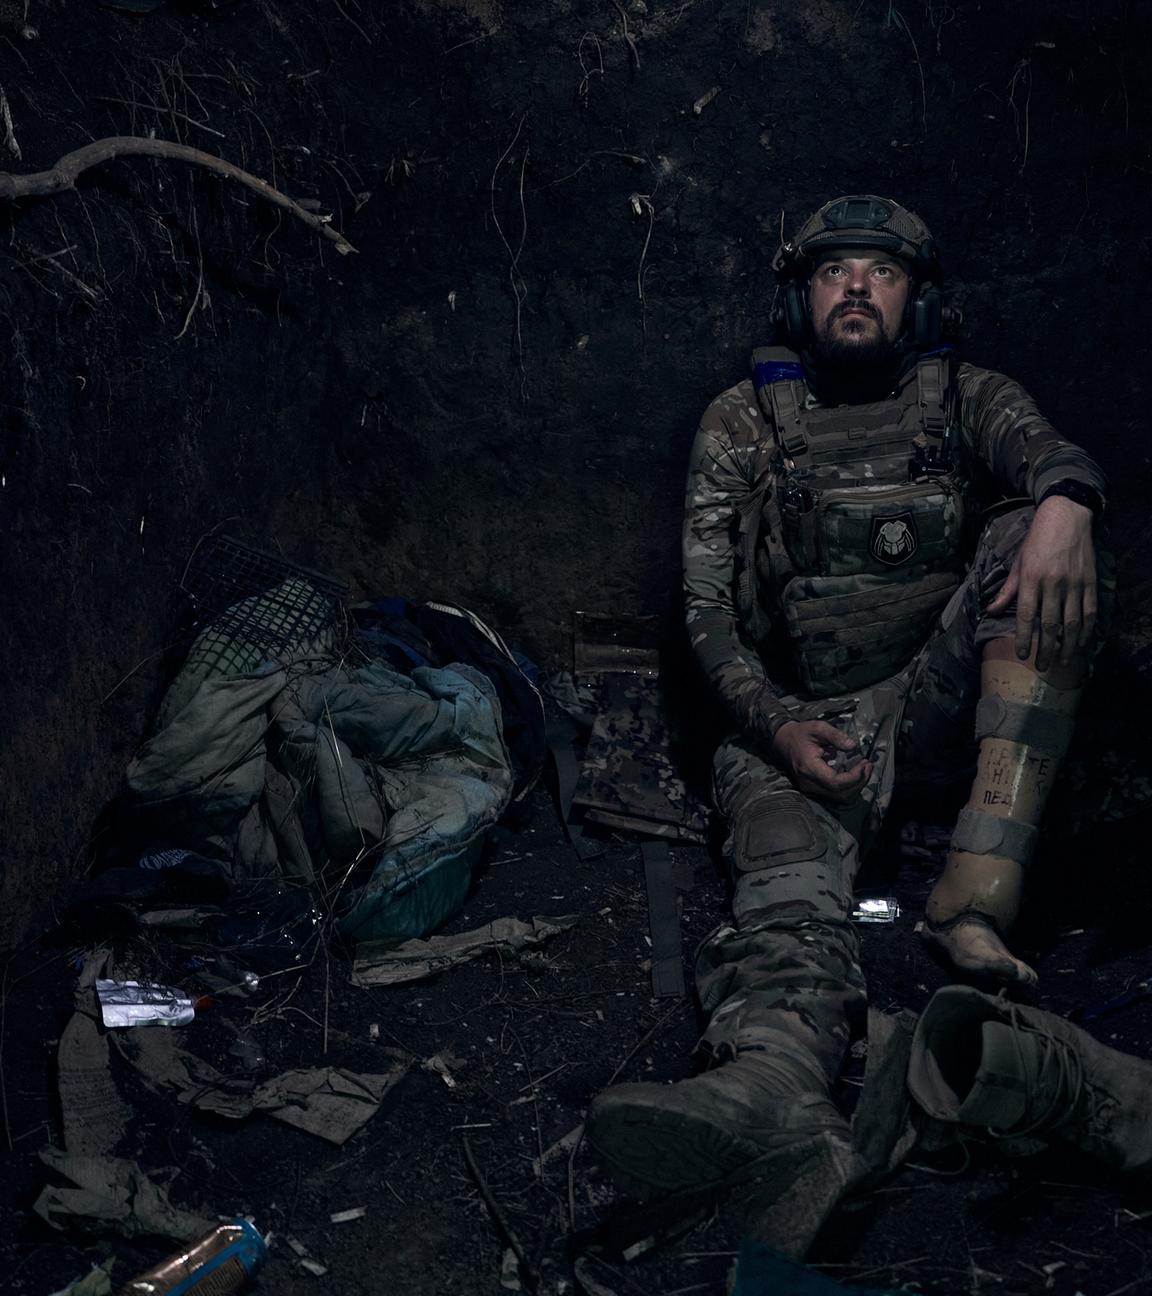 Soldat mit Beinprothese im Krieg